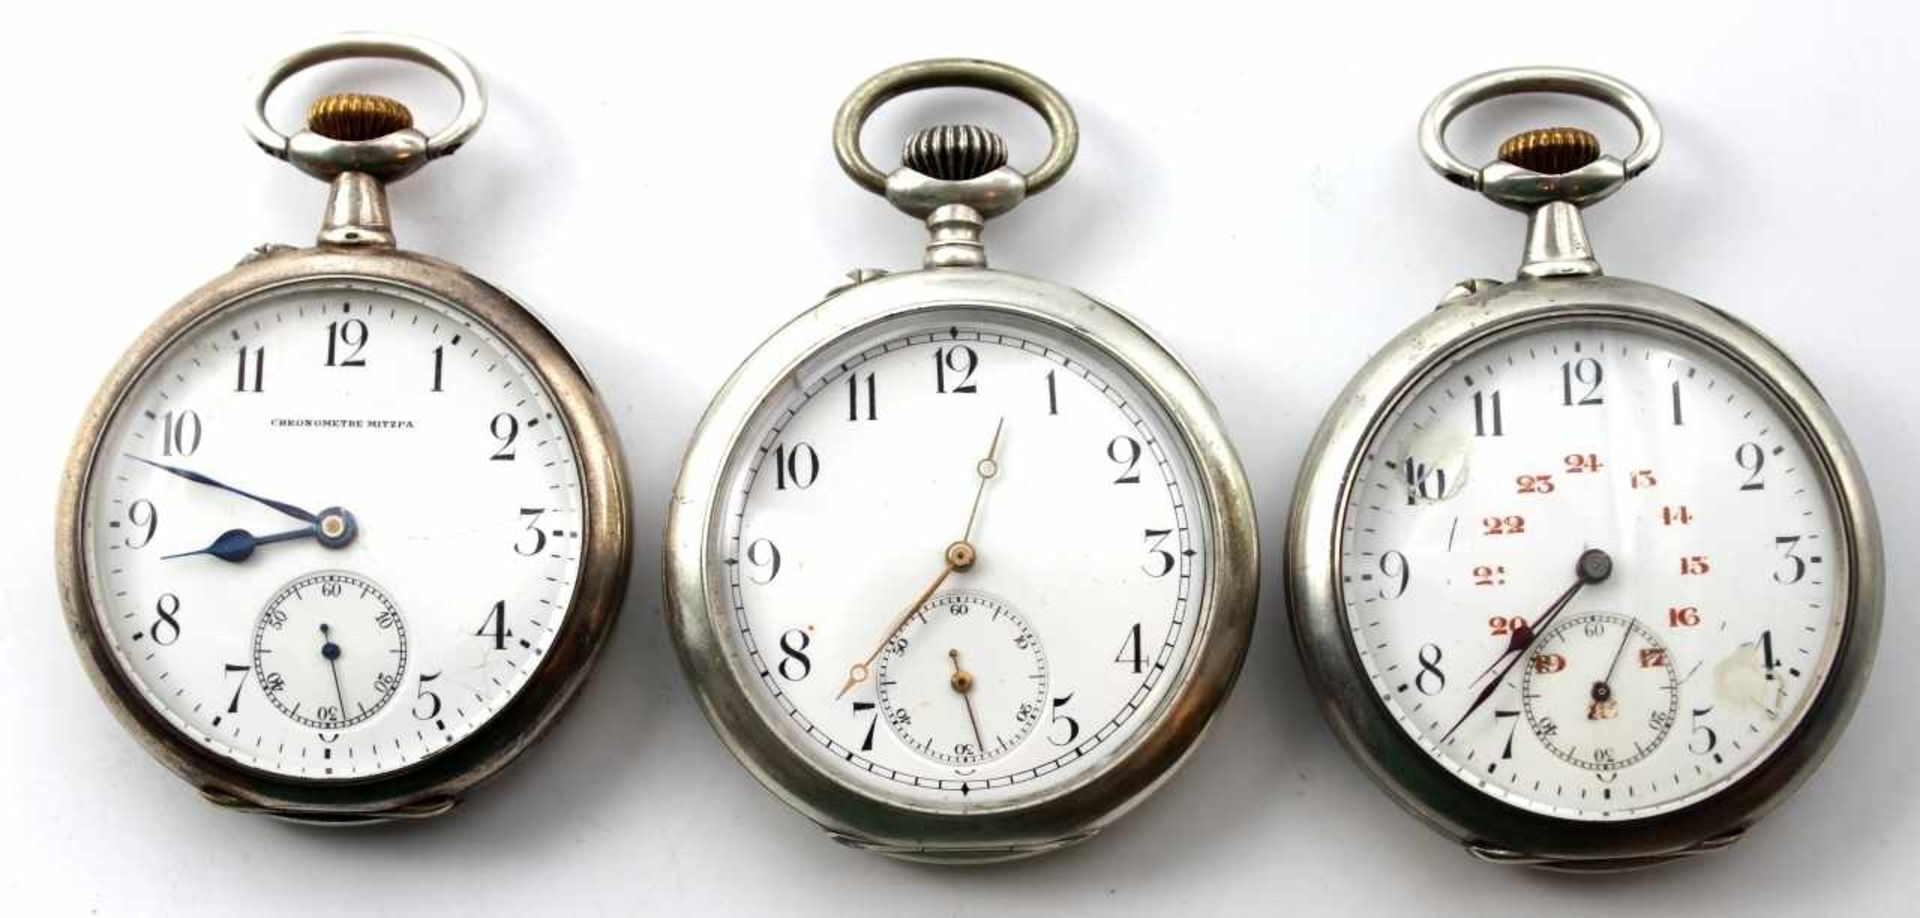 Lot von 3 silb. offenen Taschenuhren - Marke Chronometre Mitzpa Suisse Gehäuse Silber gest. 800,